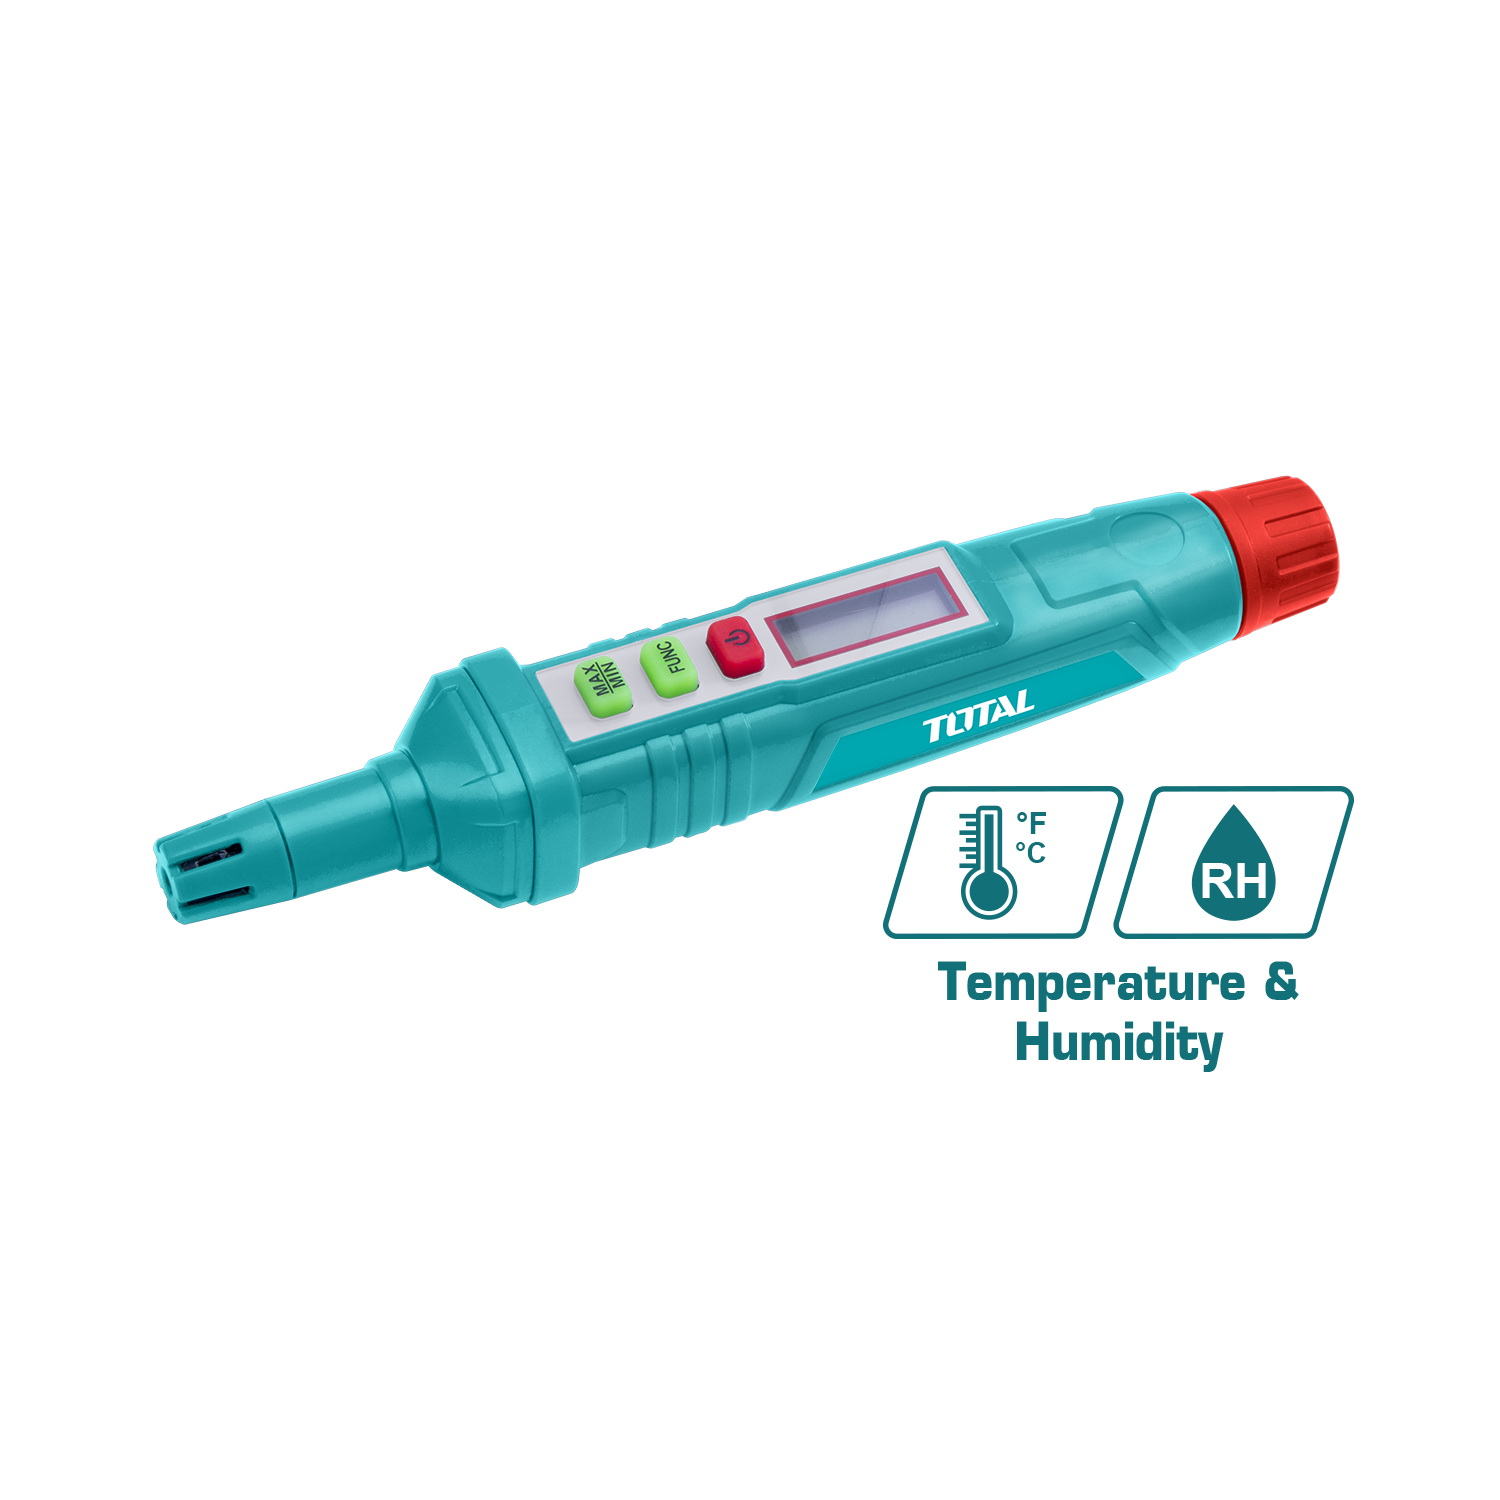 TOTAL Digital Humidity&Temperature Meter (TETHT23)